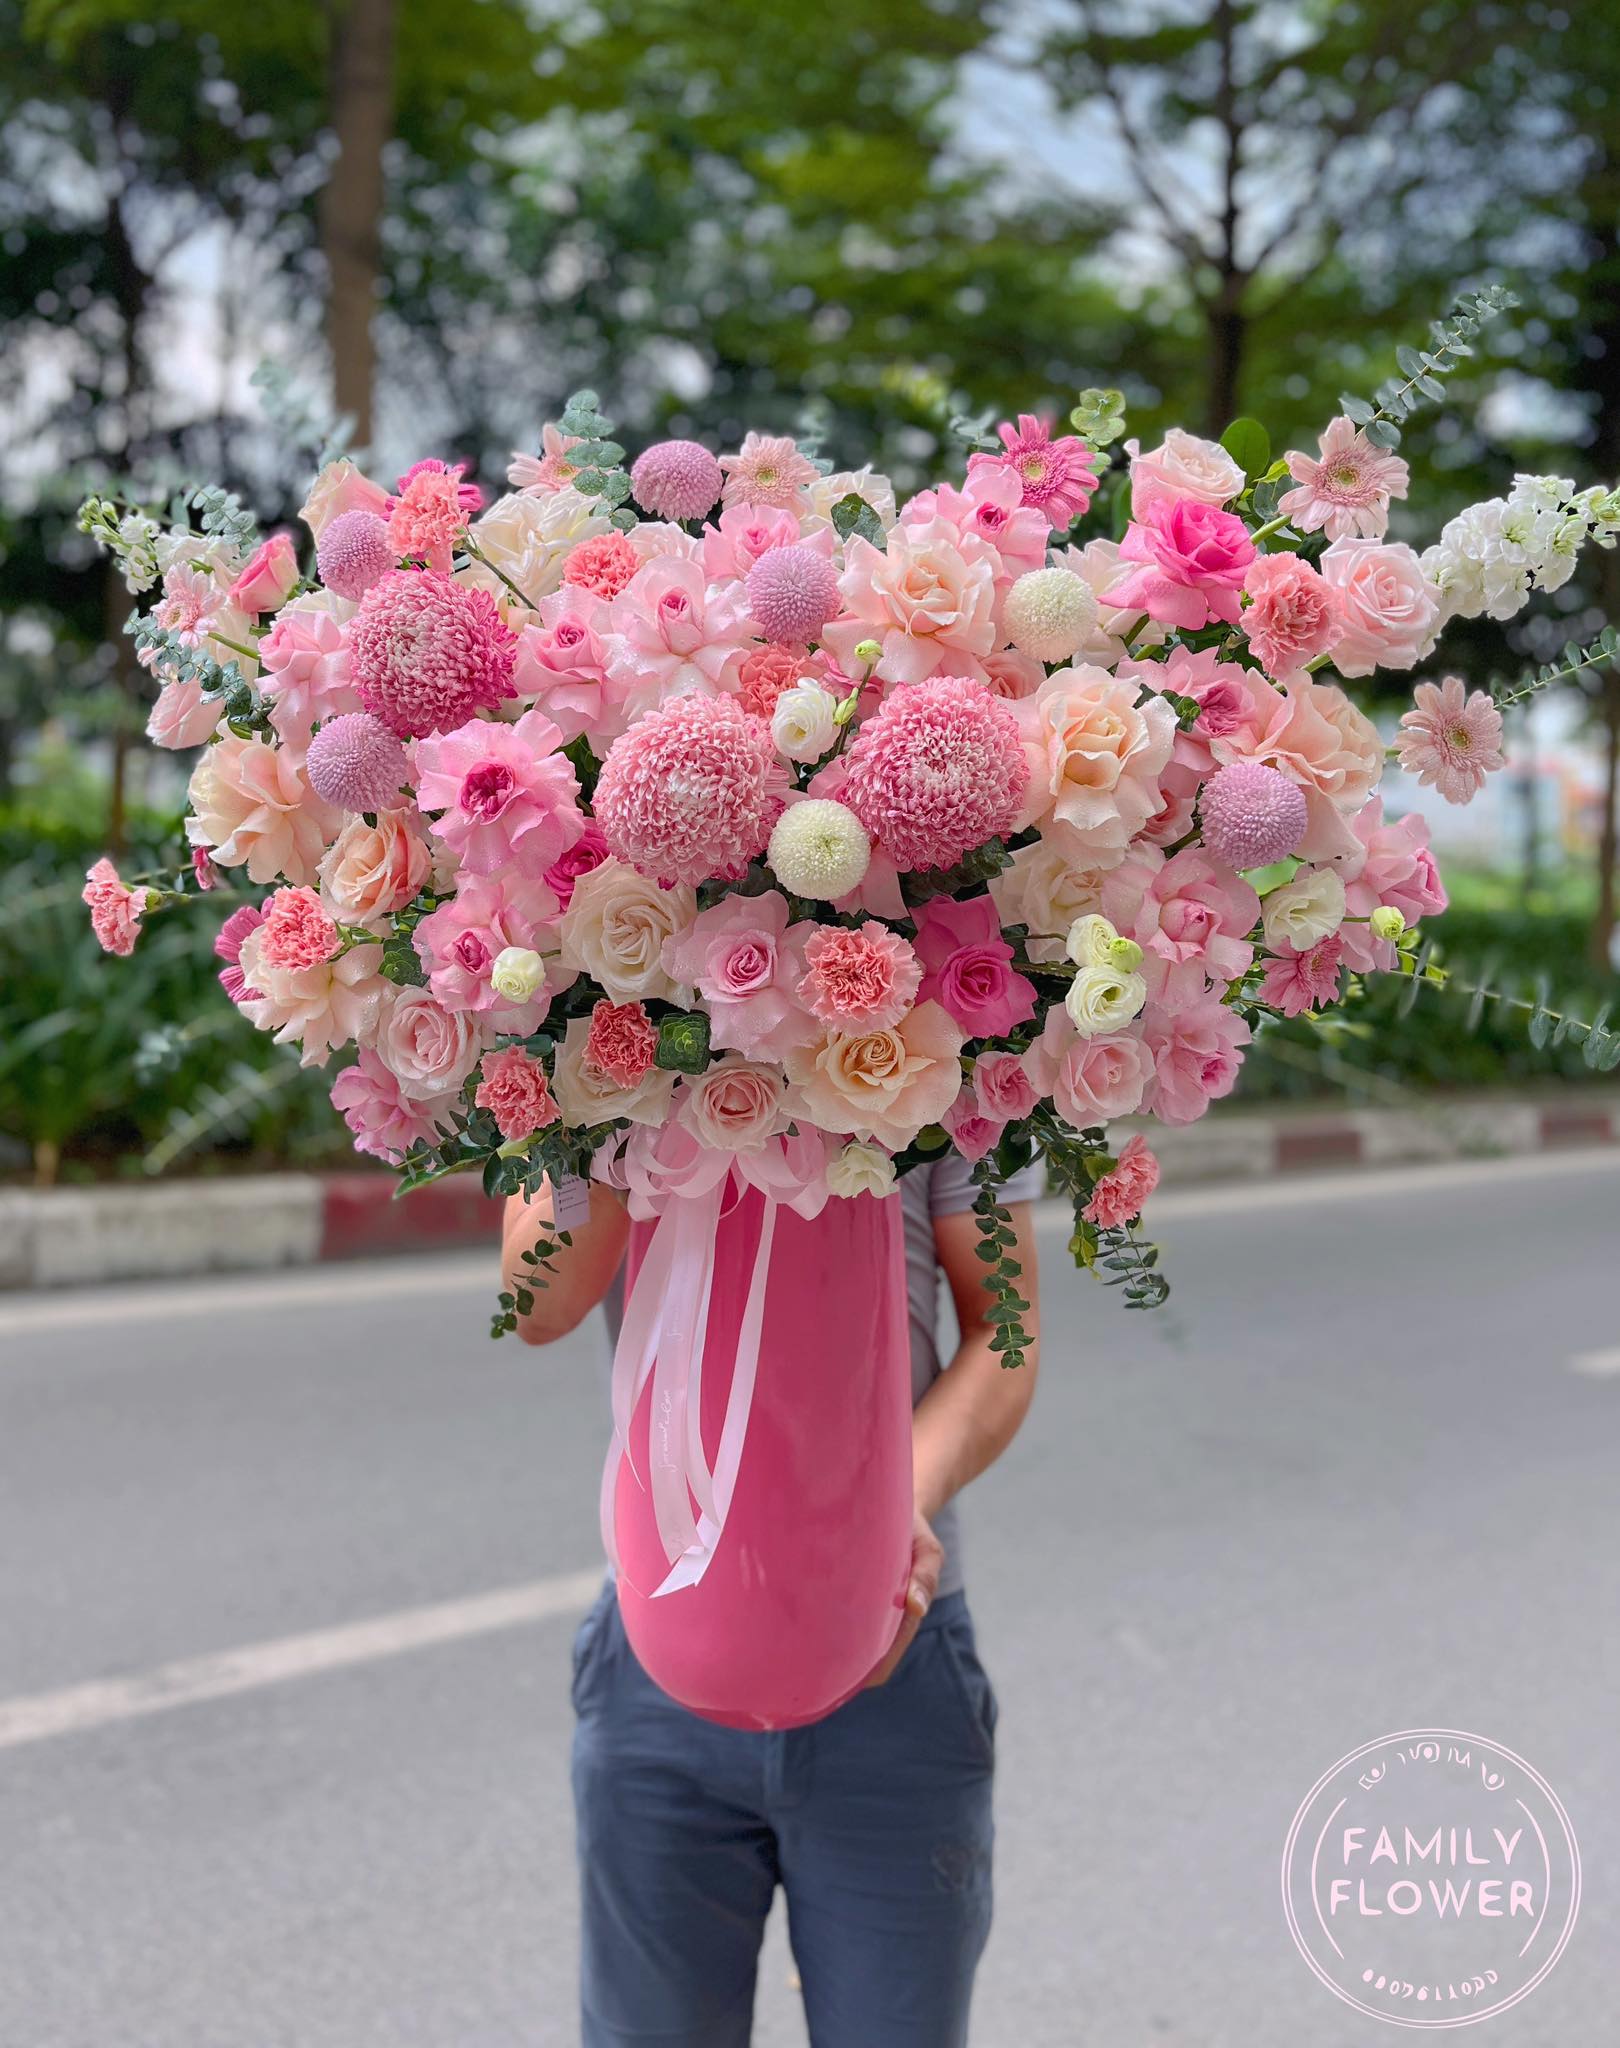 Bình hoa cao cấp tặng sinh nhật mẹ, sếp tại Ba Đình, Hà Nội ! Mua hoa tươi Hà Nội